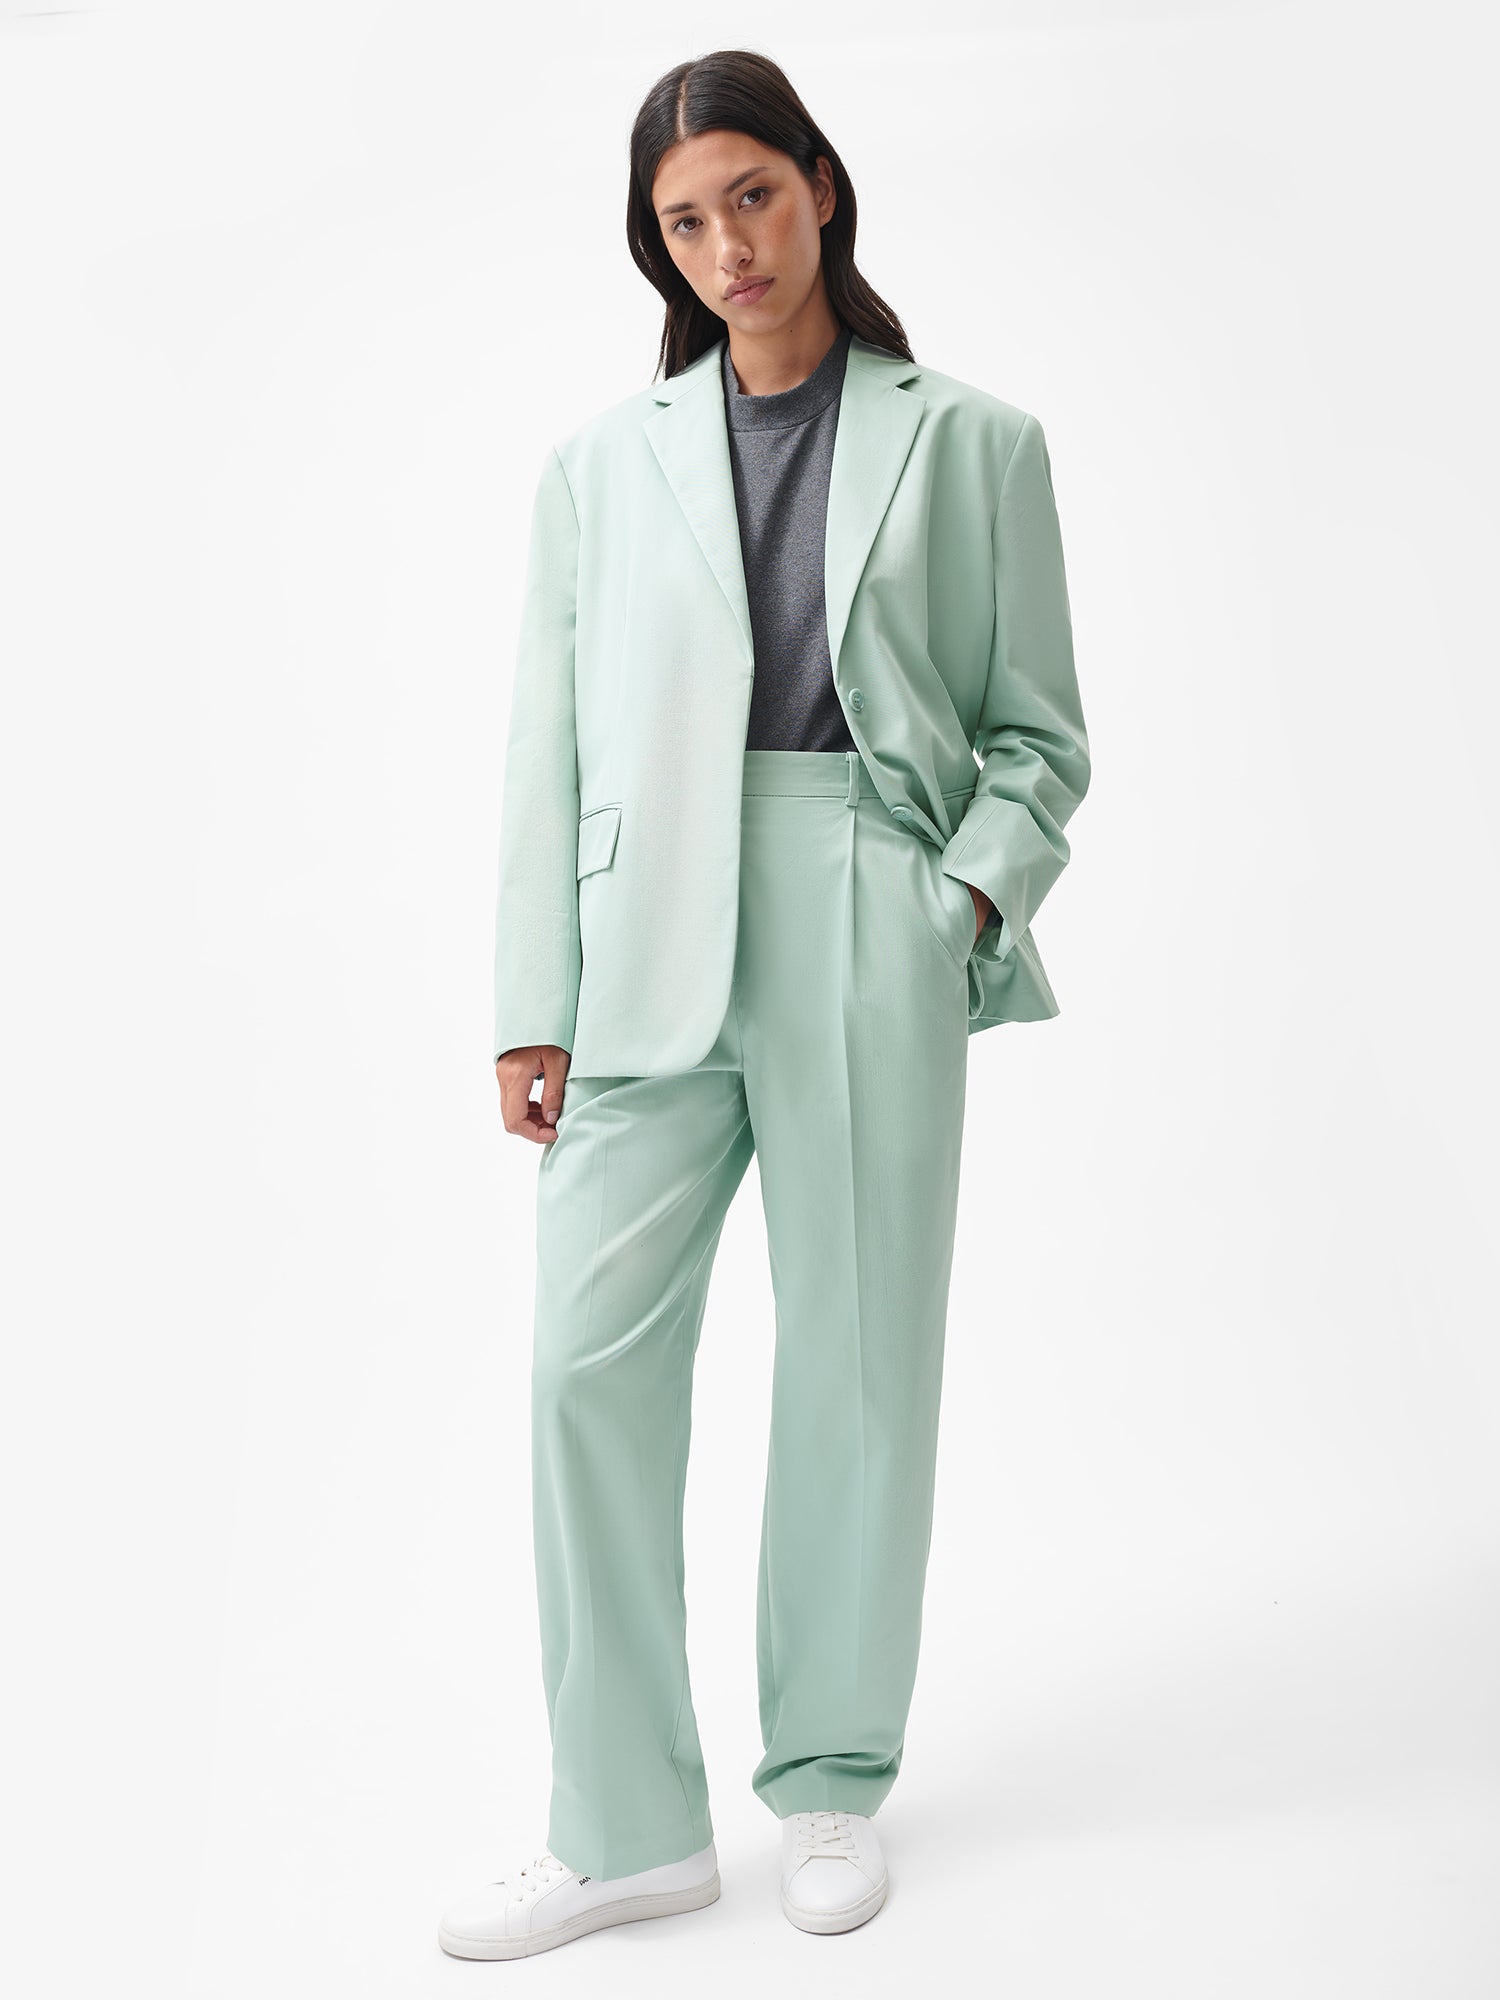 The Best Women's Suit Sets 2022: Best Women's Blazers and Pants Sets